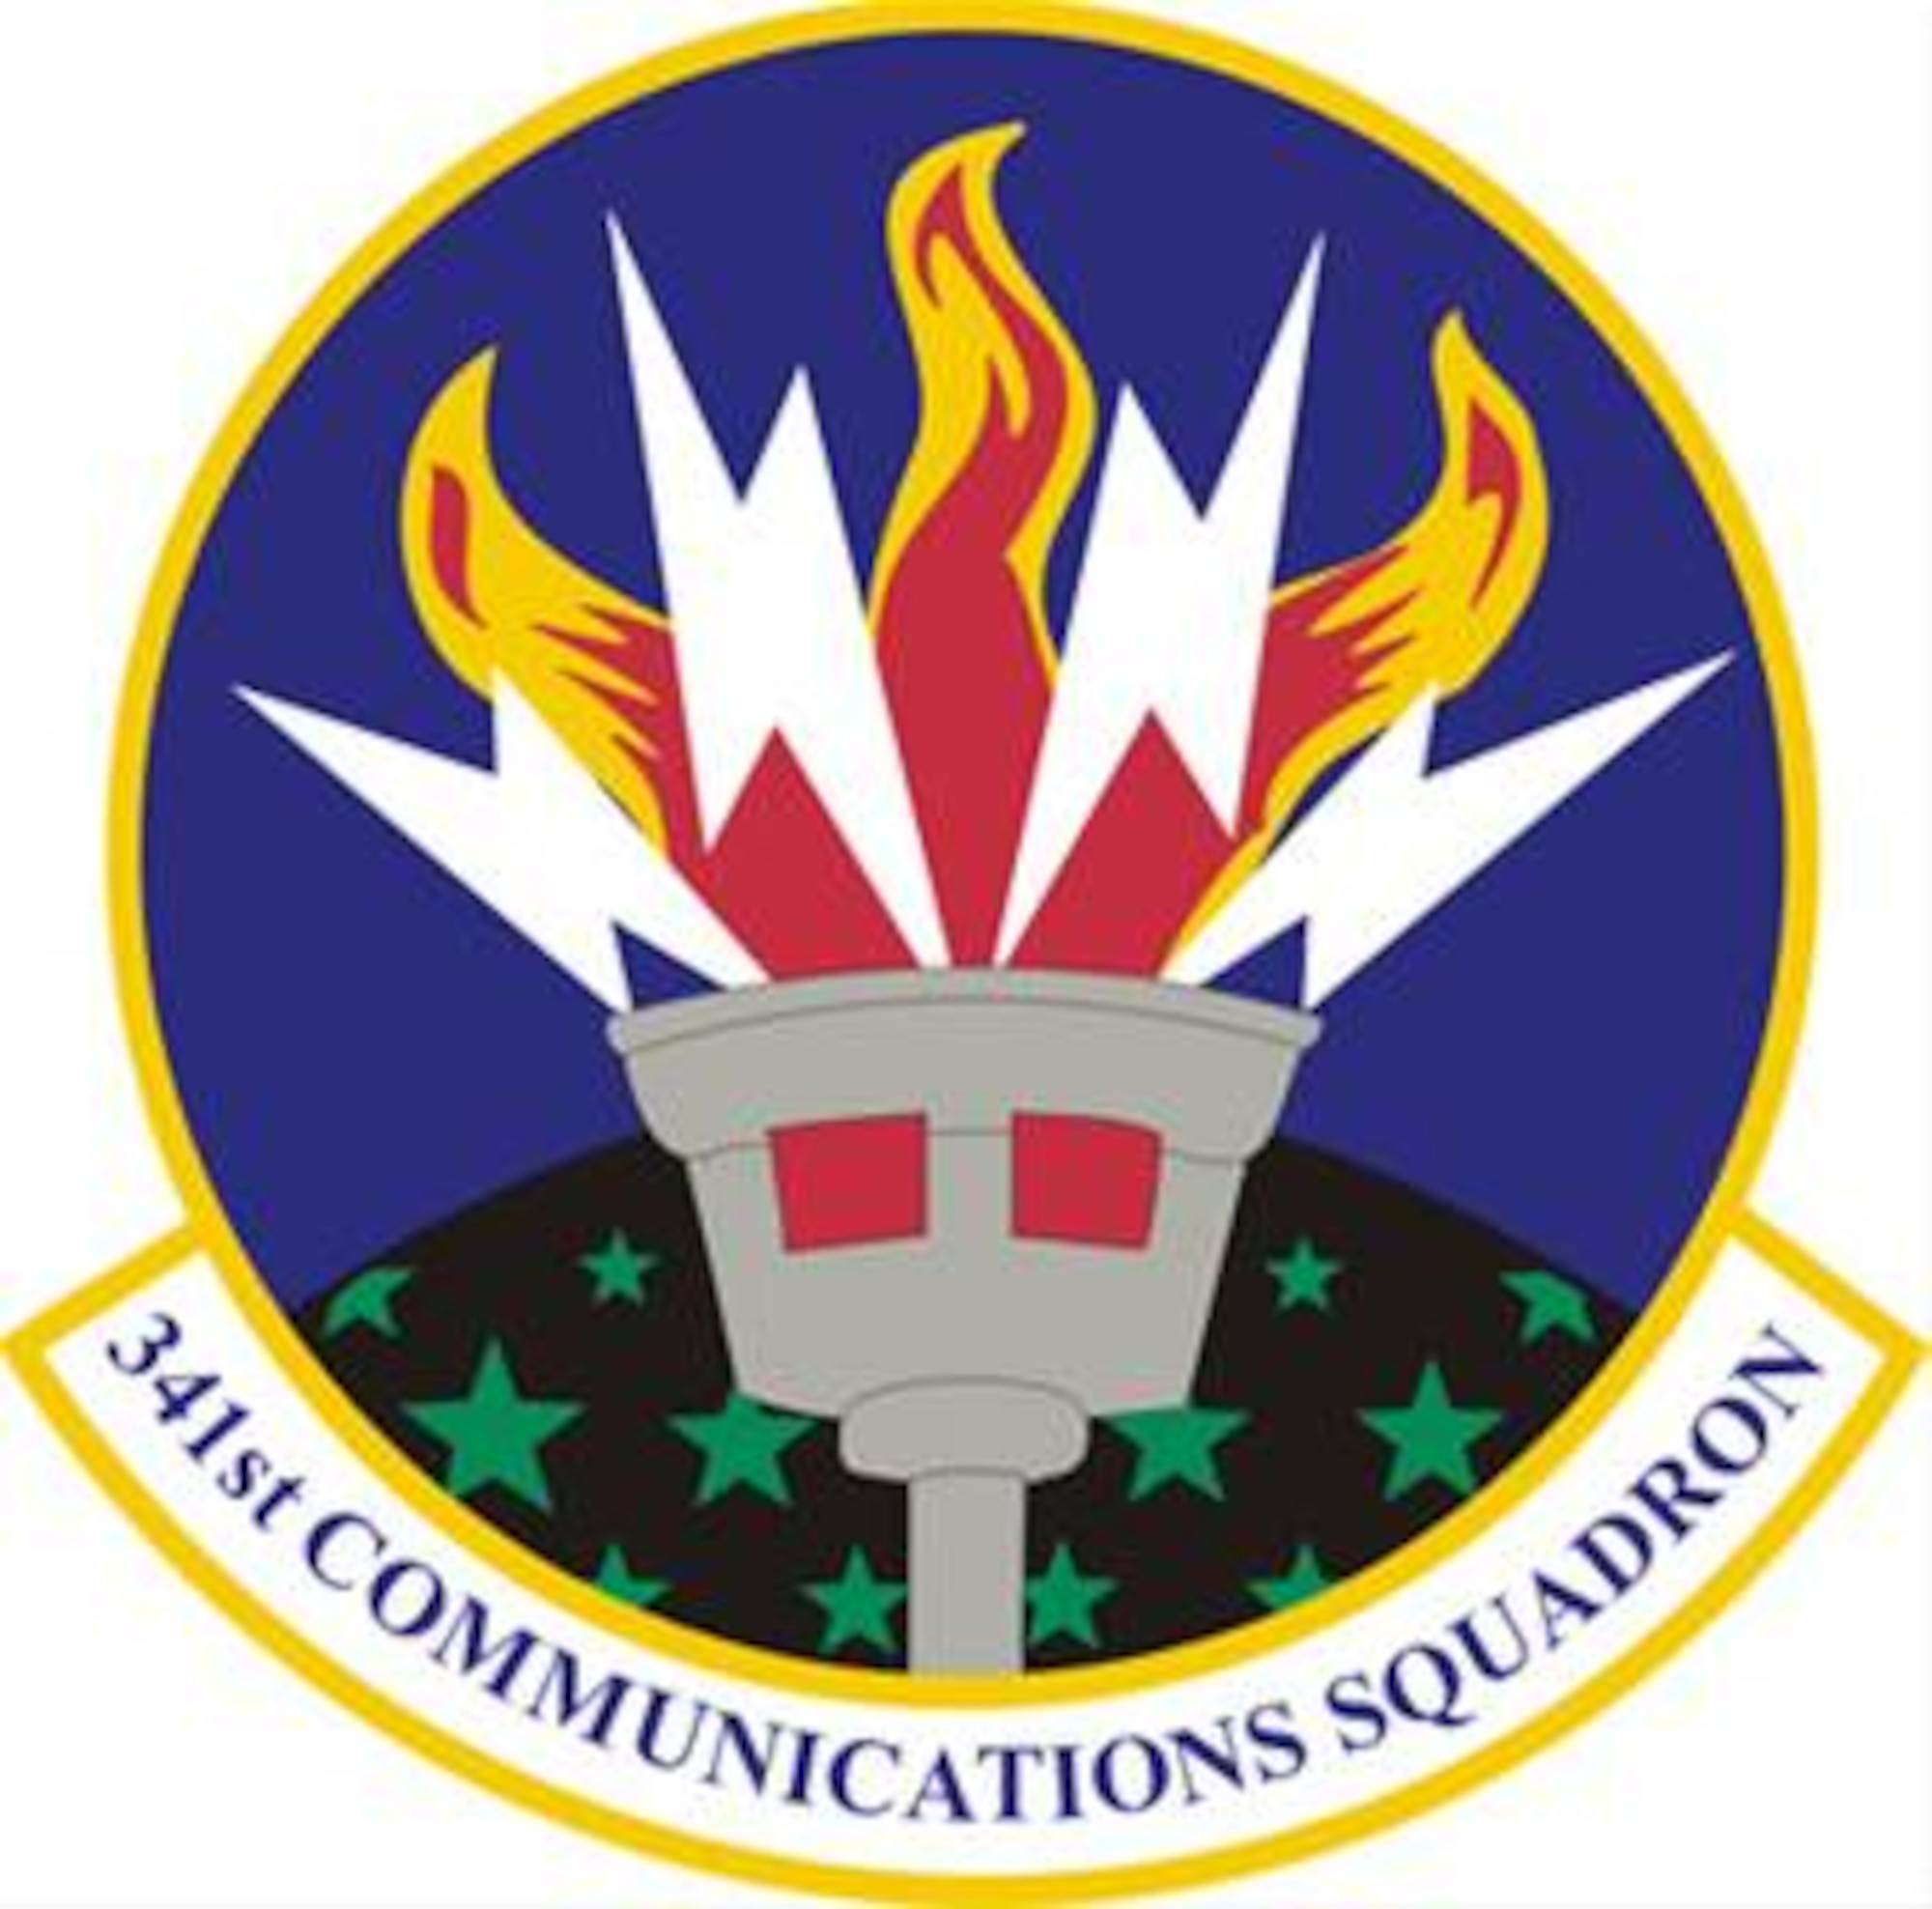 341st Communication Squadron patch